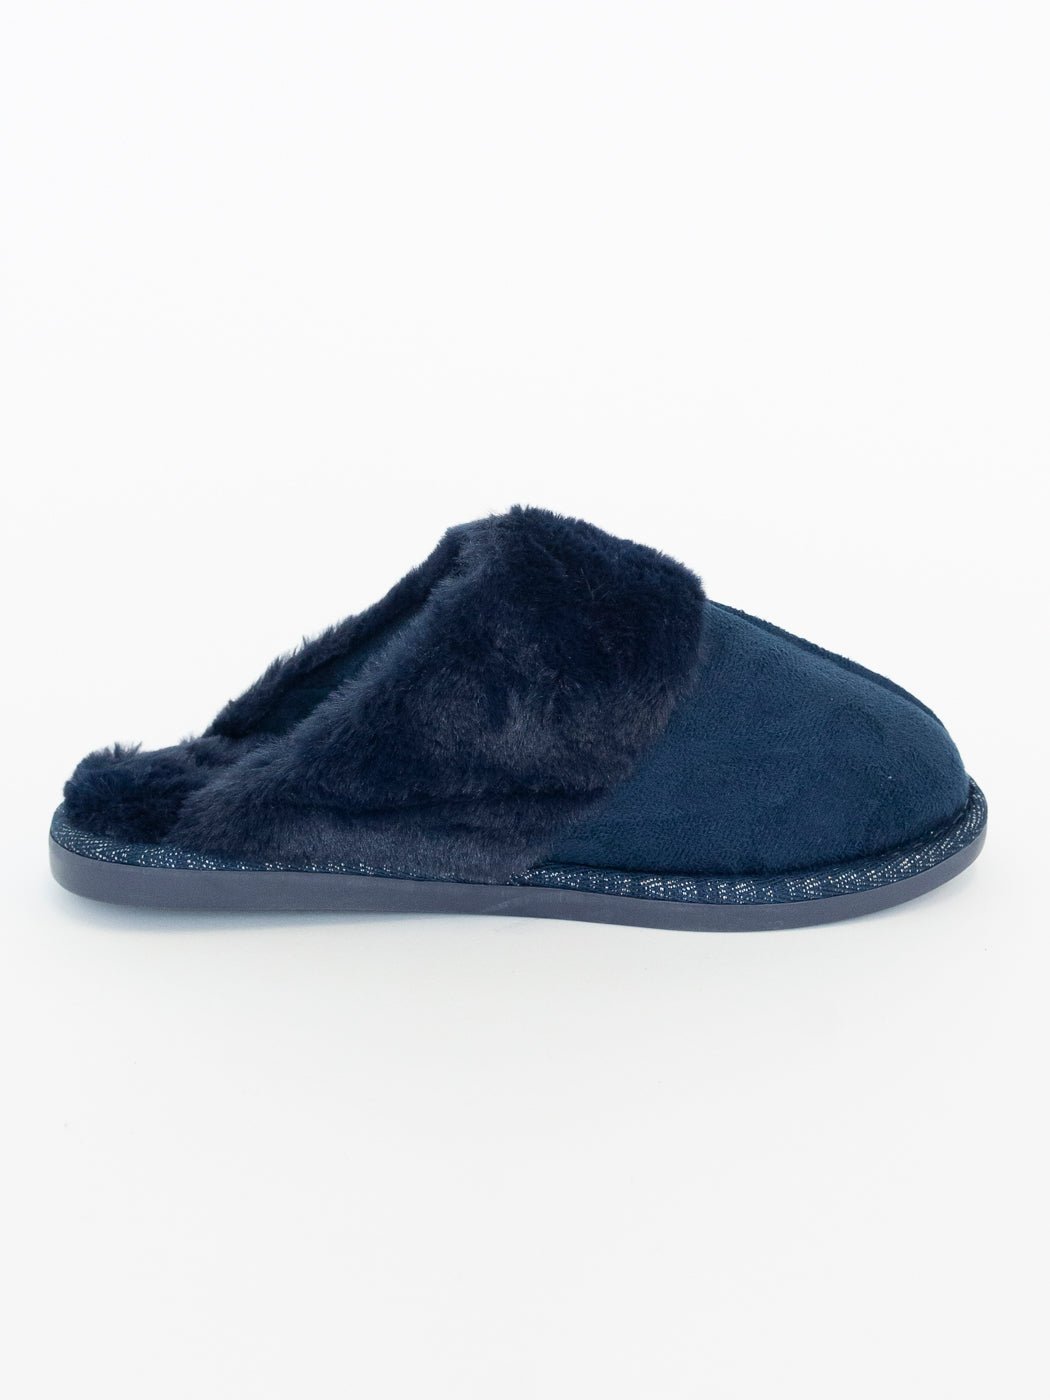 Joyce slippers galaxy blue - Online-Mode